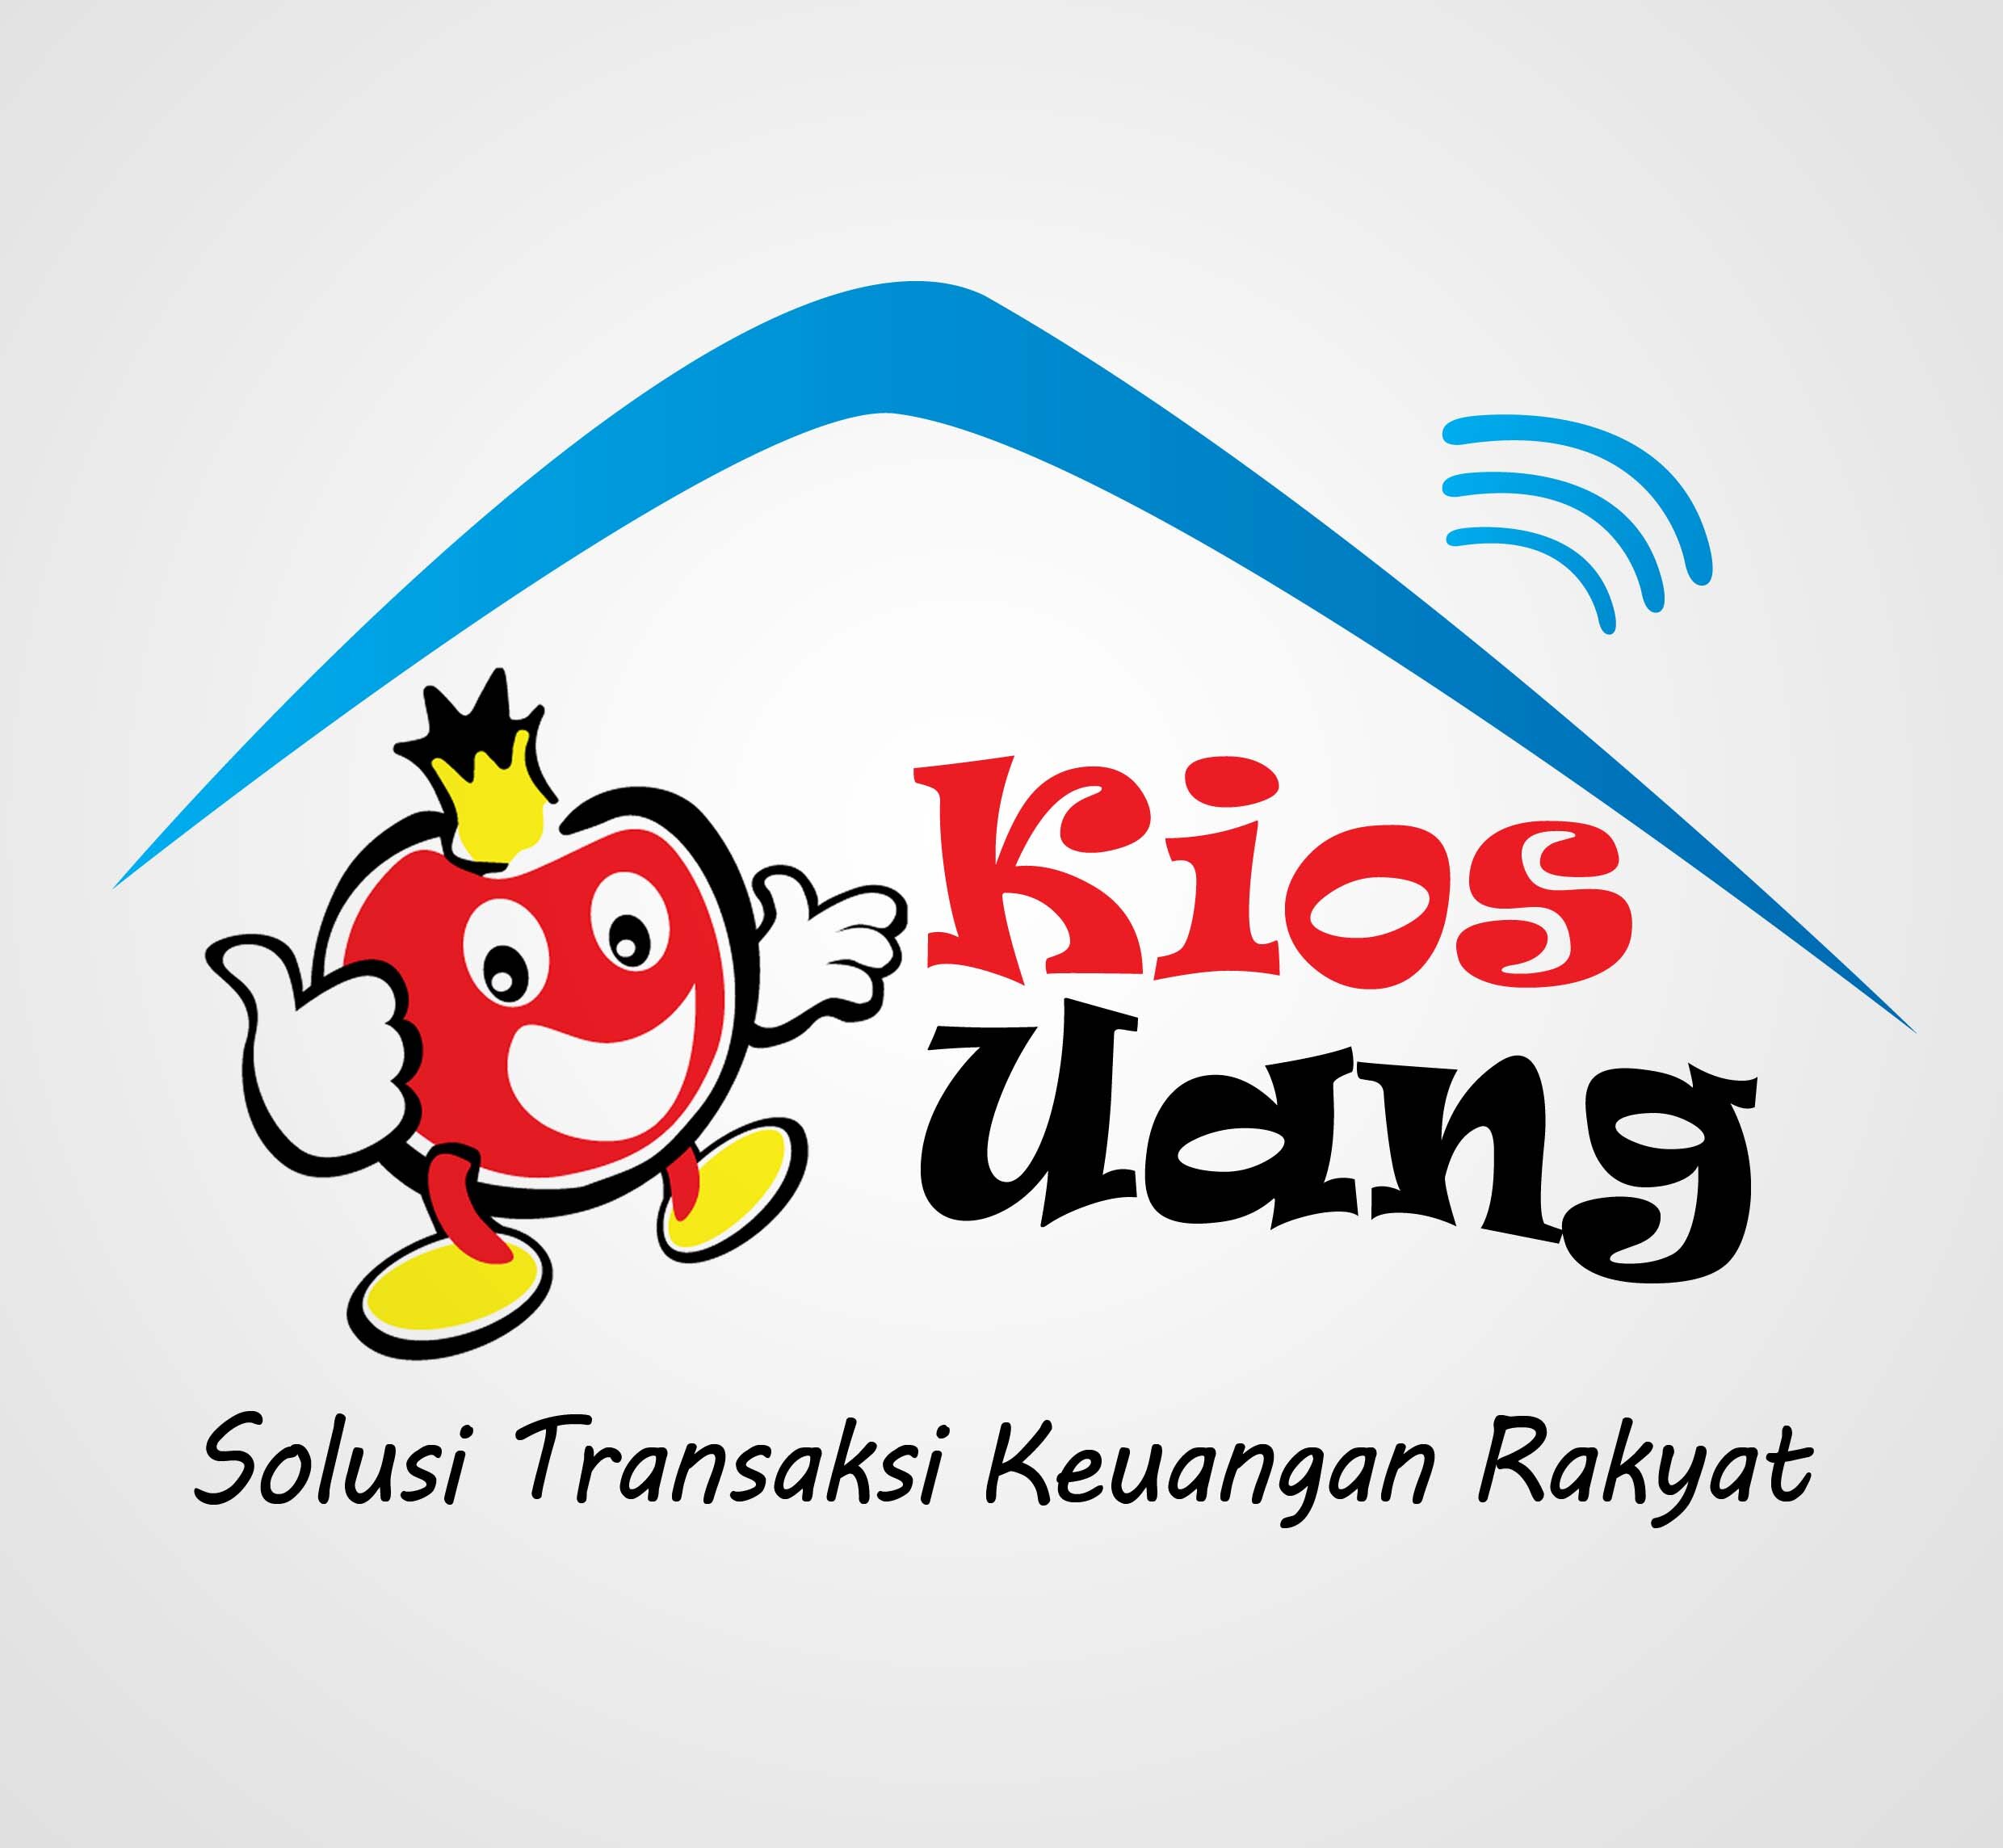 KiosUang adalah tempat transaksi keuangan Elektronik dgn platform delima telkom: transfer uang, setor-tarik, bayar tagihan, dan beli pulsa, listrik dll.